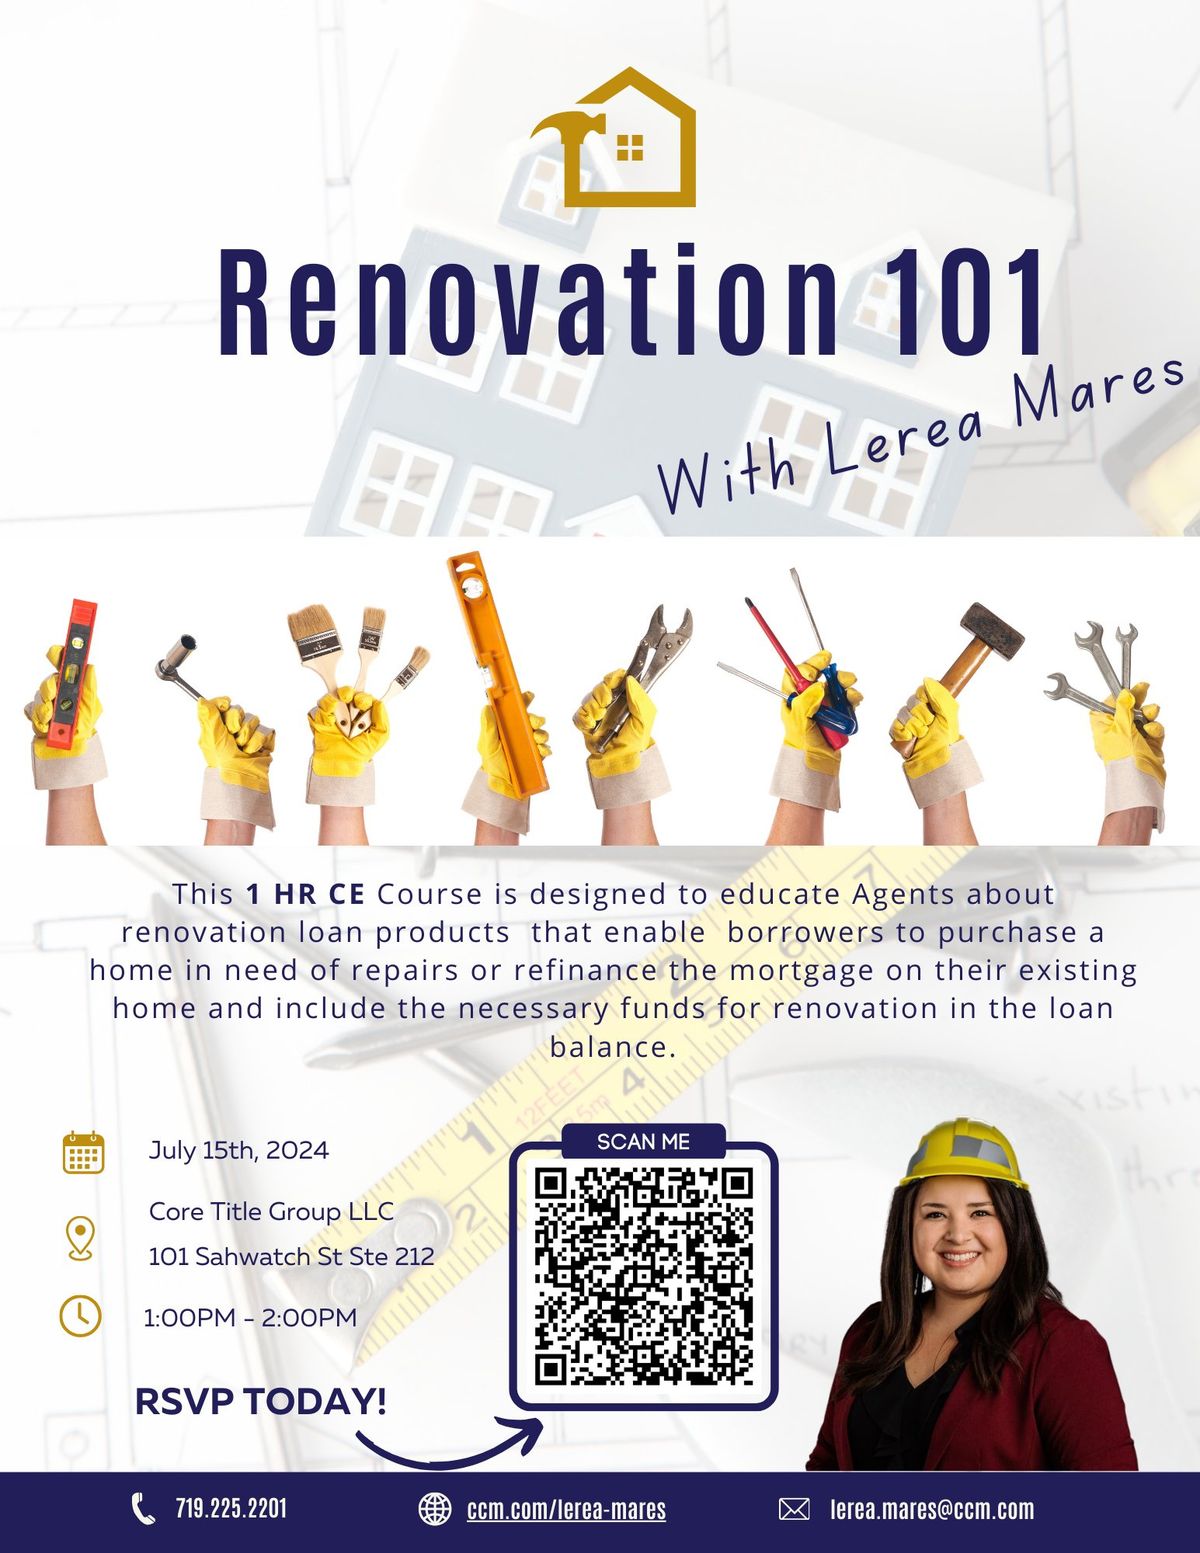 Renovation 101 (1 HR CE) Core Title Group LLC 